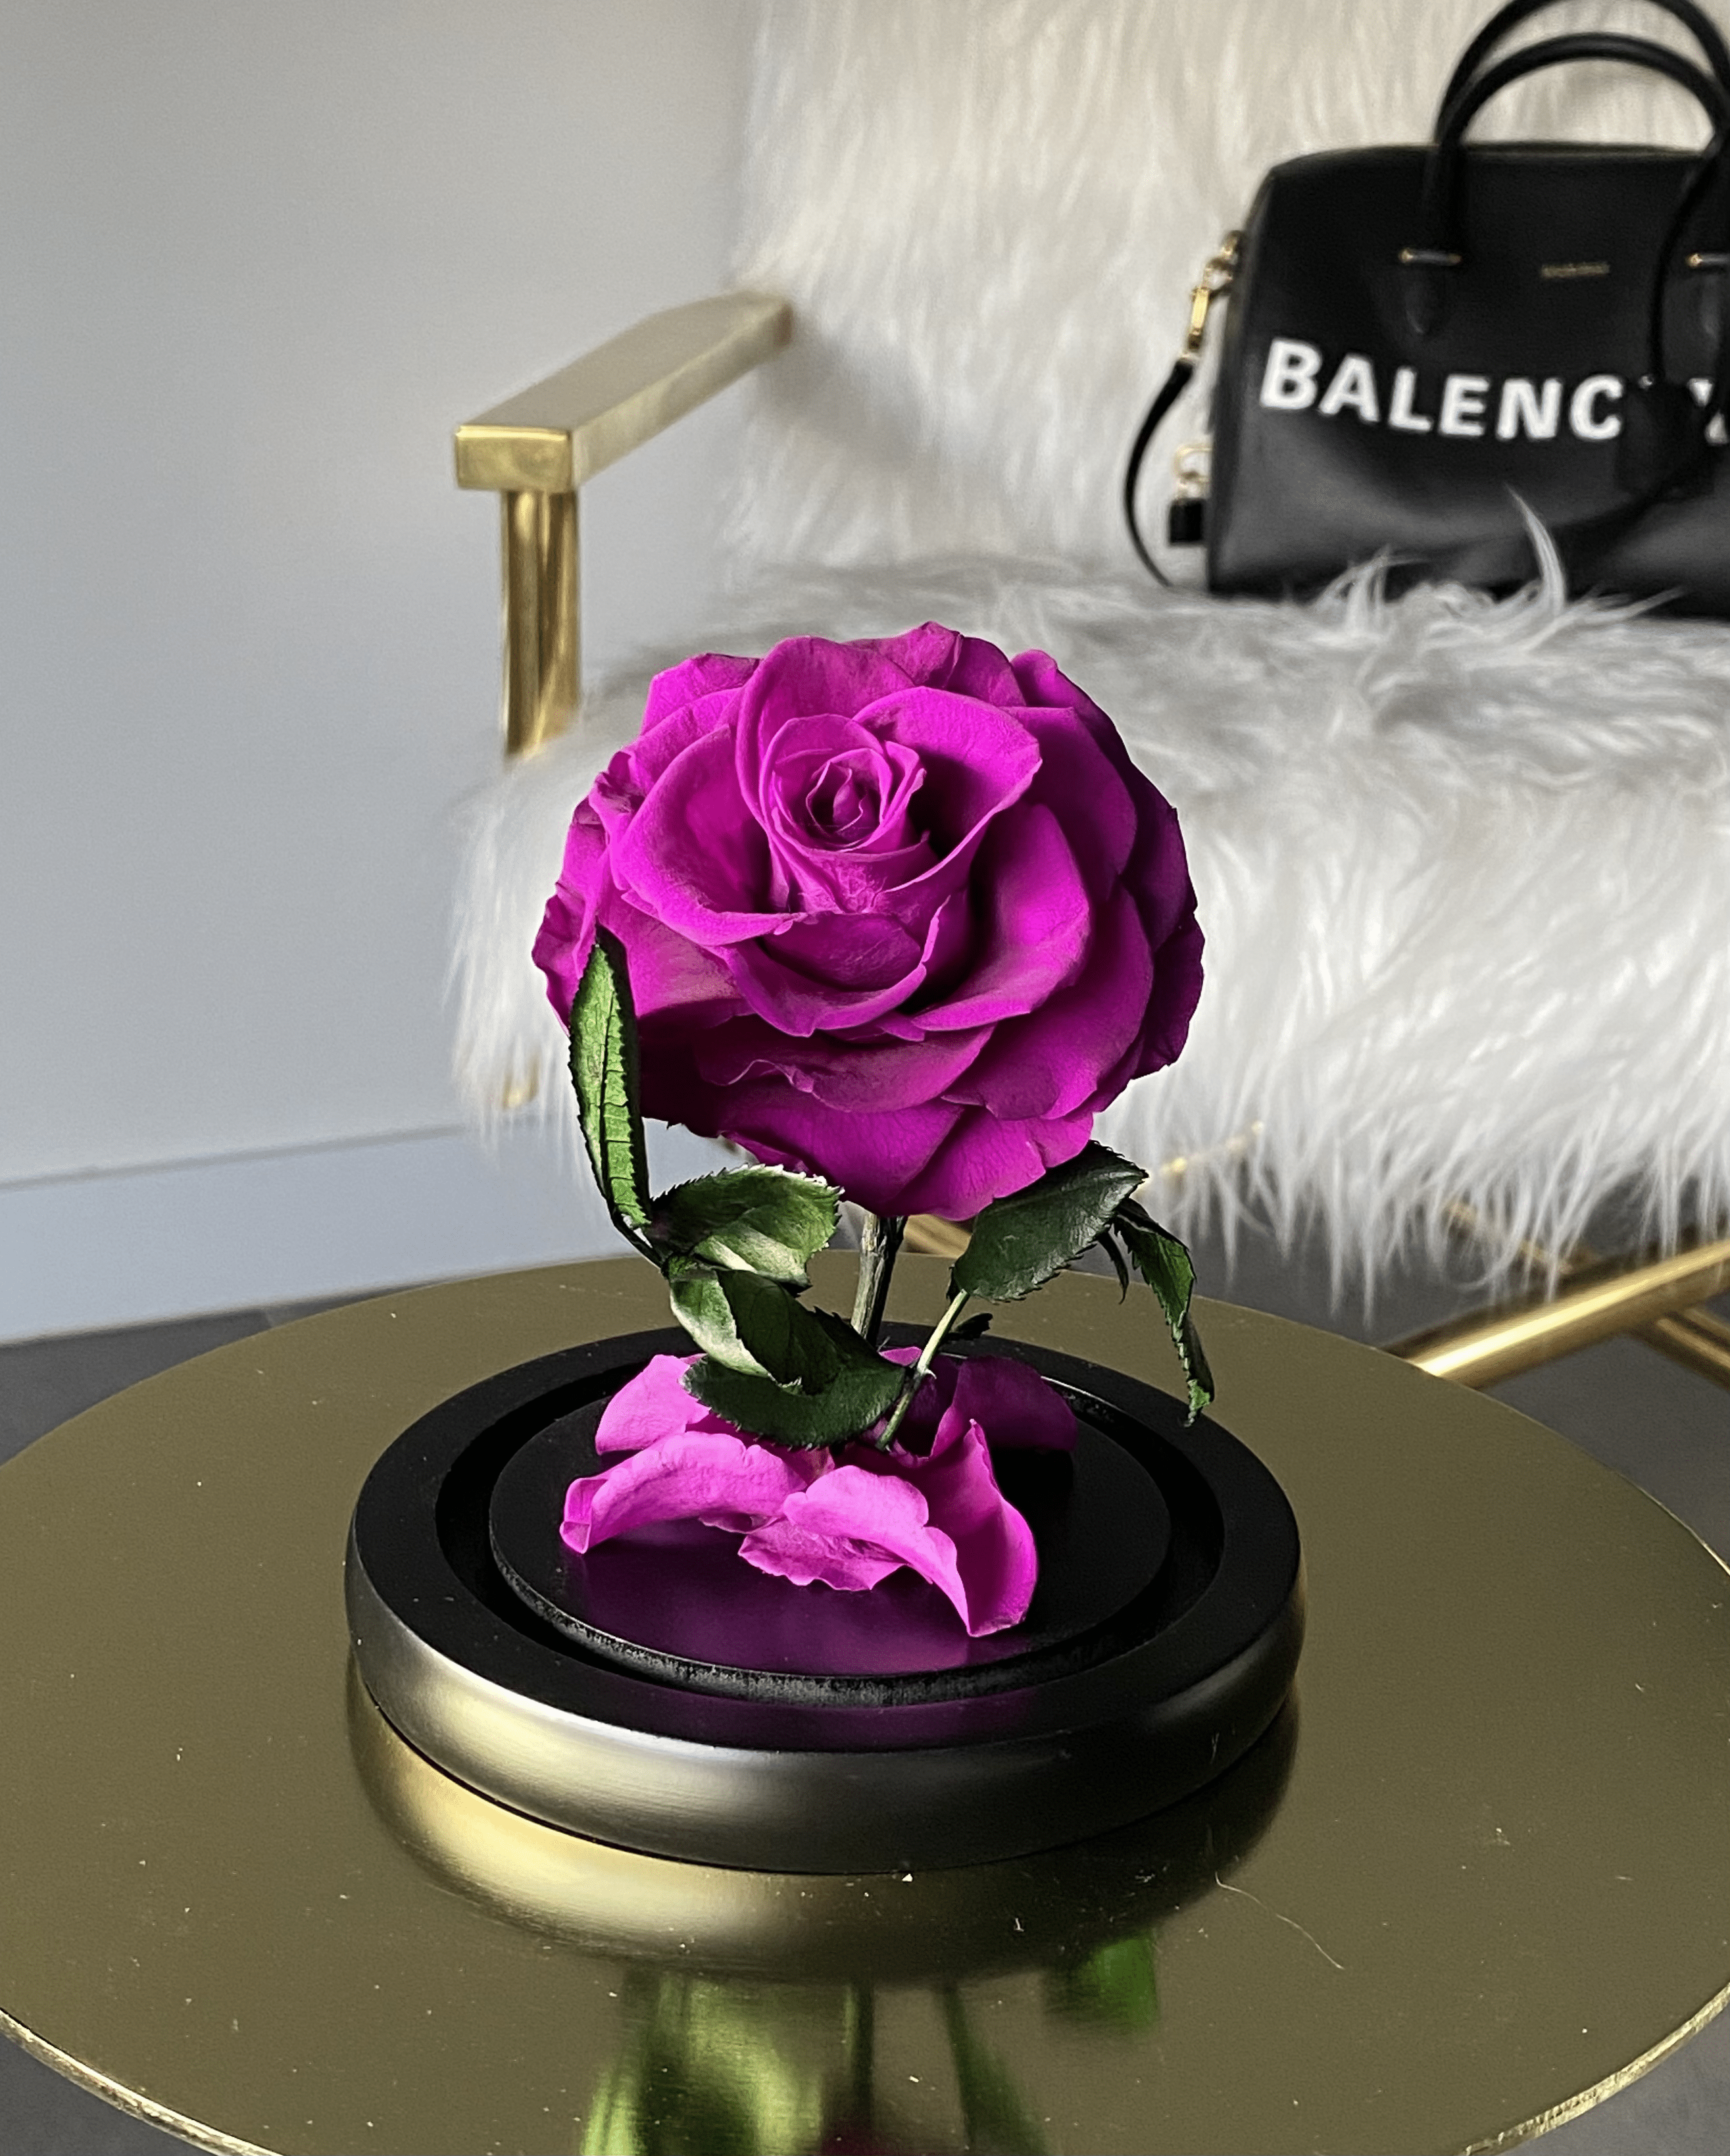 Purple Mini Rose Dome - My Lasting Bouquet